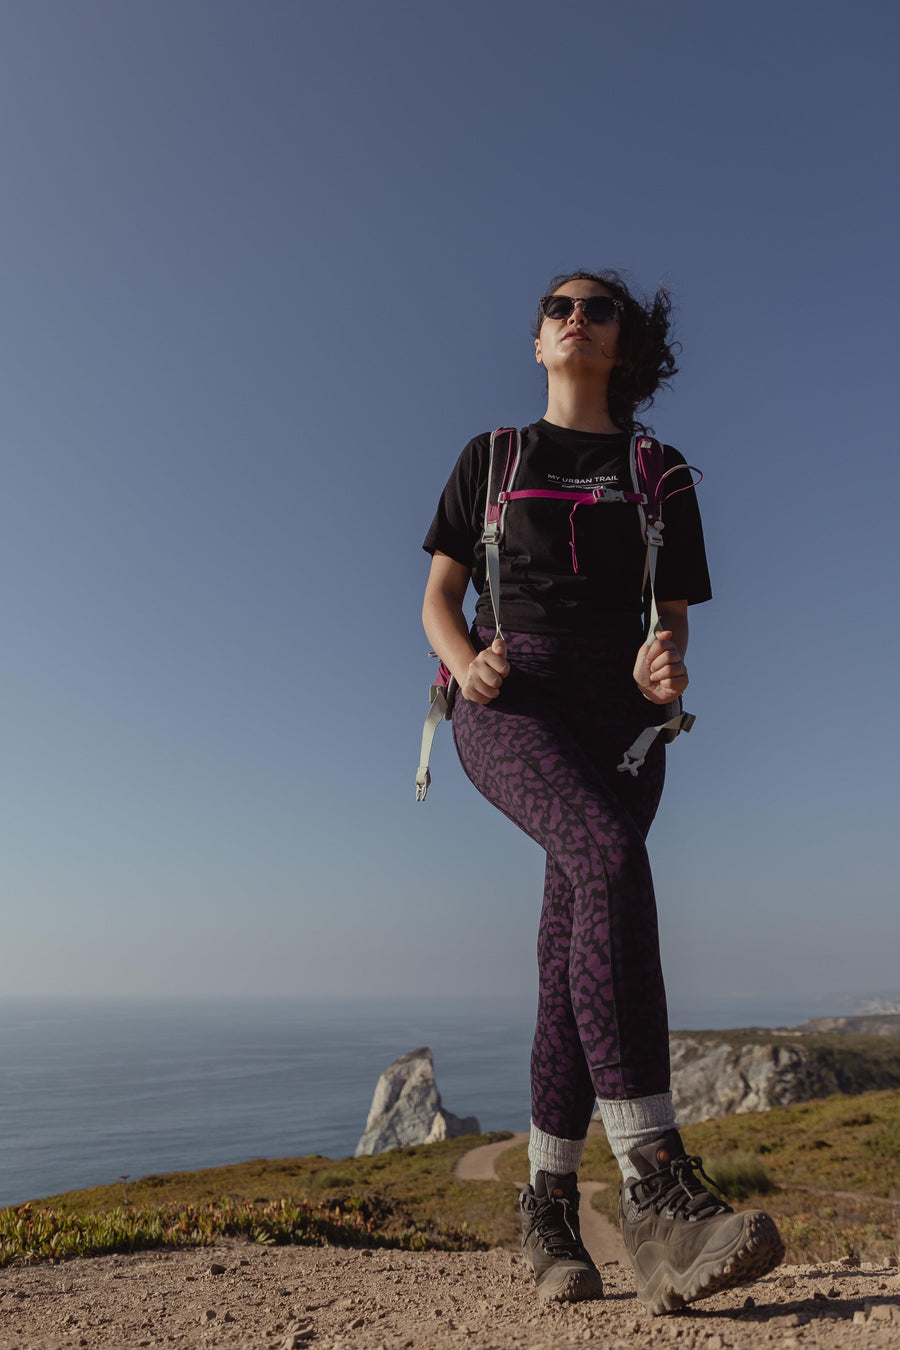 Women's Hiking Leggings: Trailblazer